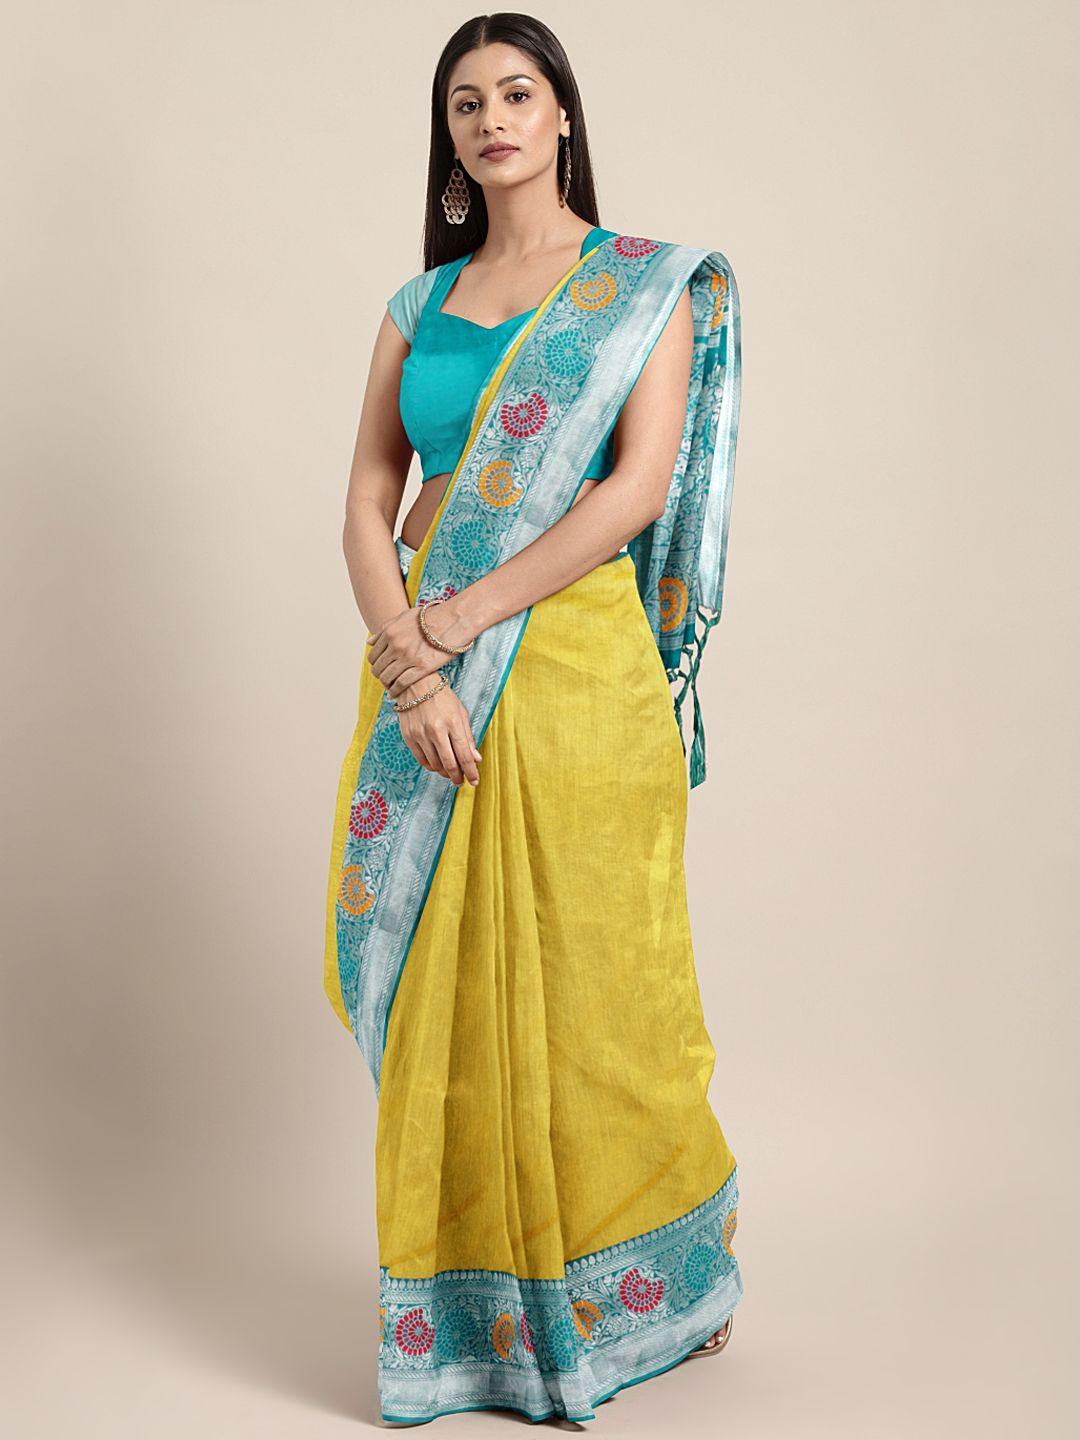 Varkala Silk Sarees Yellow & Teal Green Silk Cotton Solid Banarasi Saree